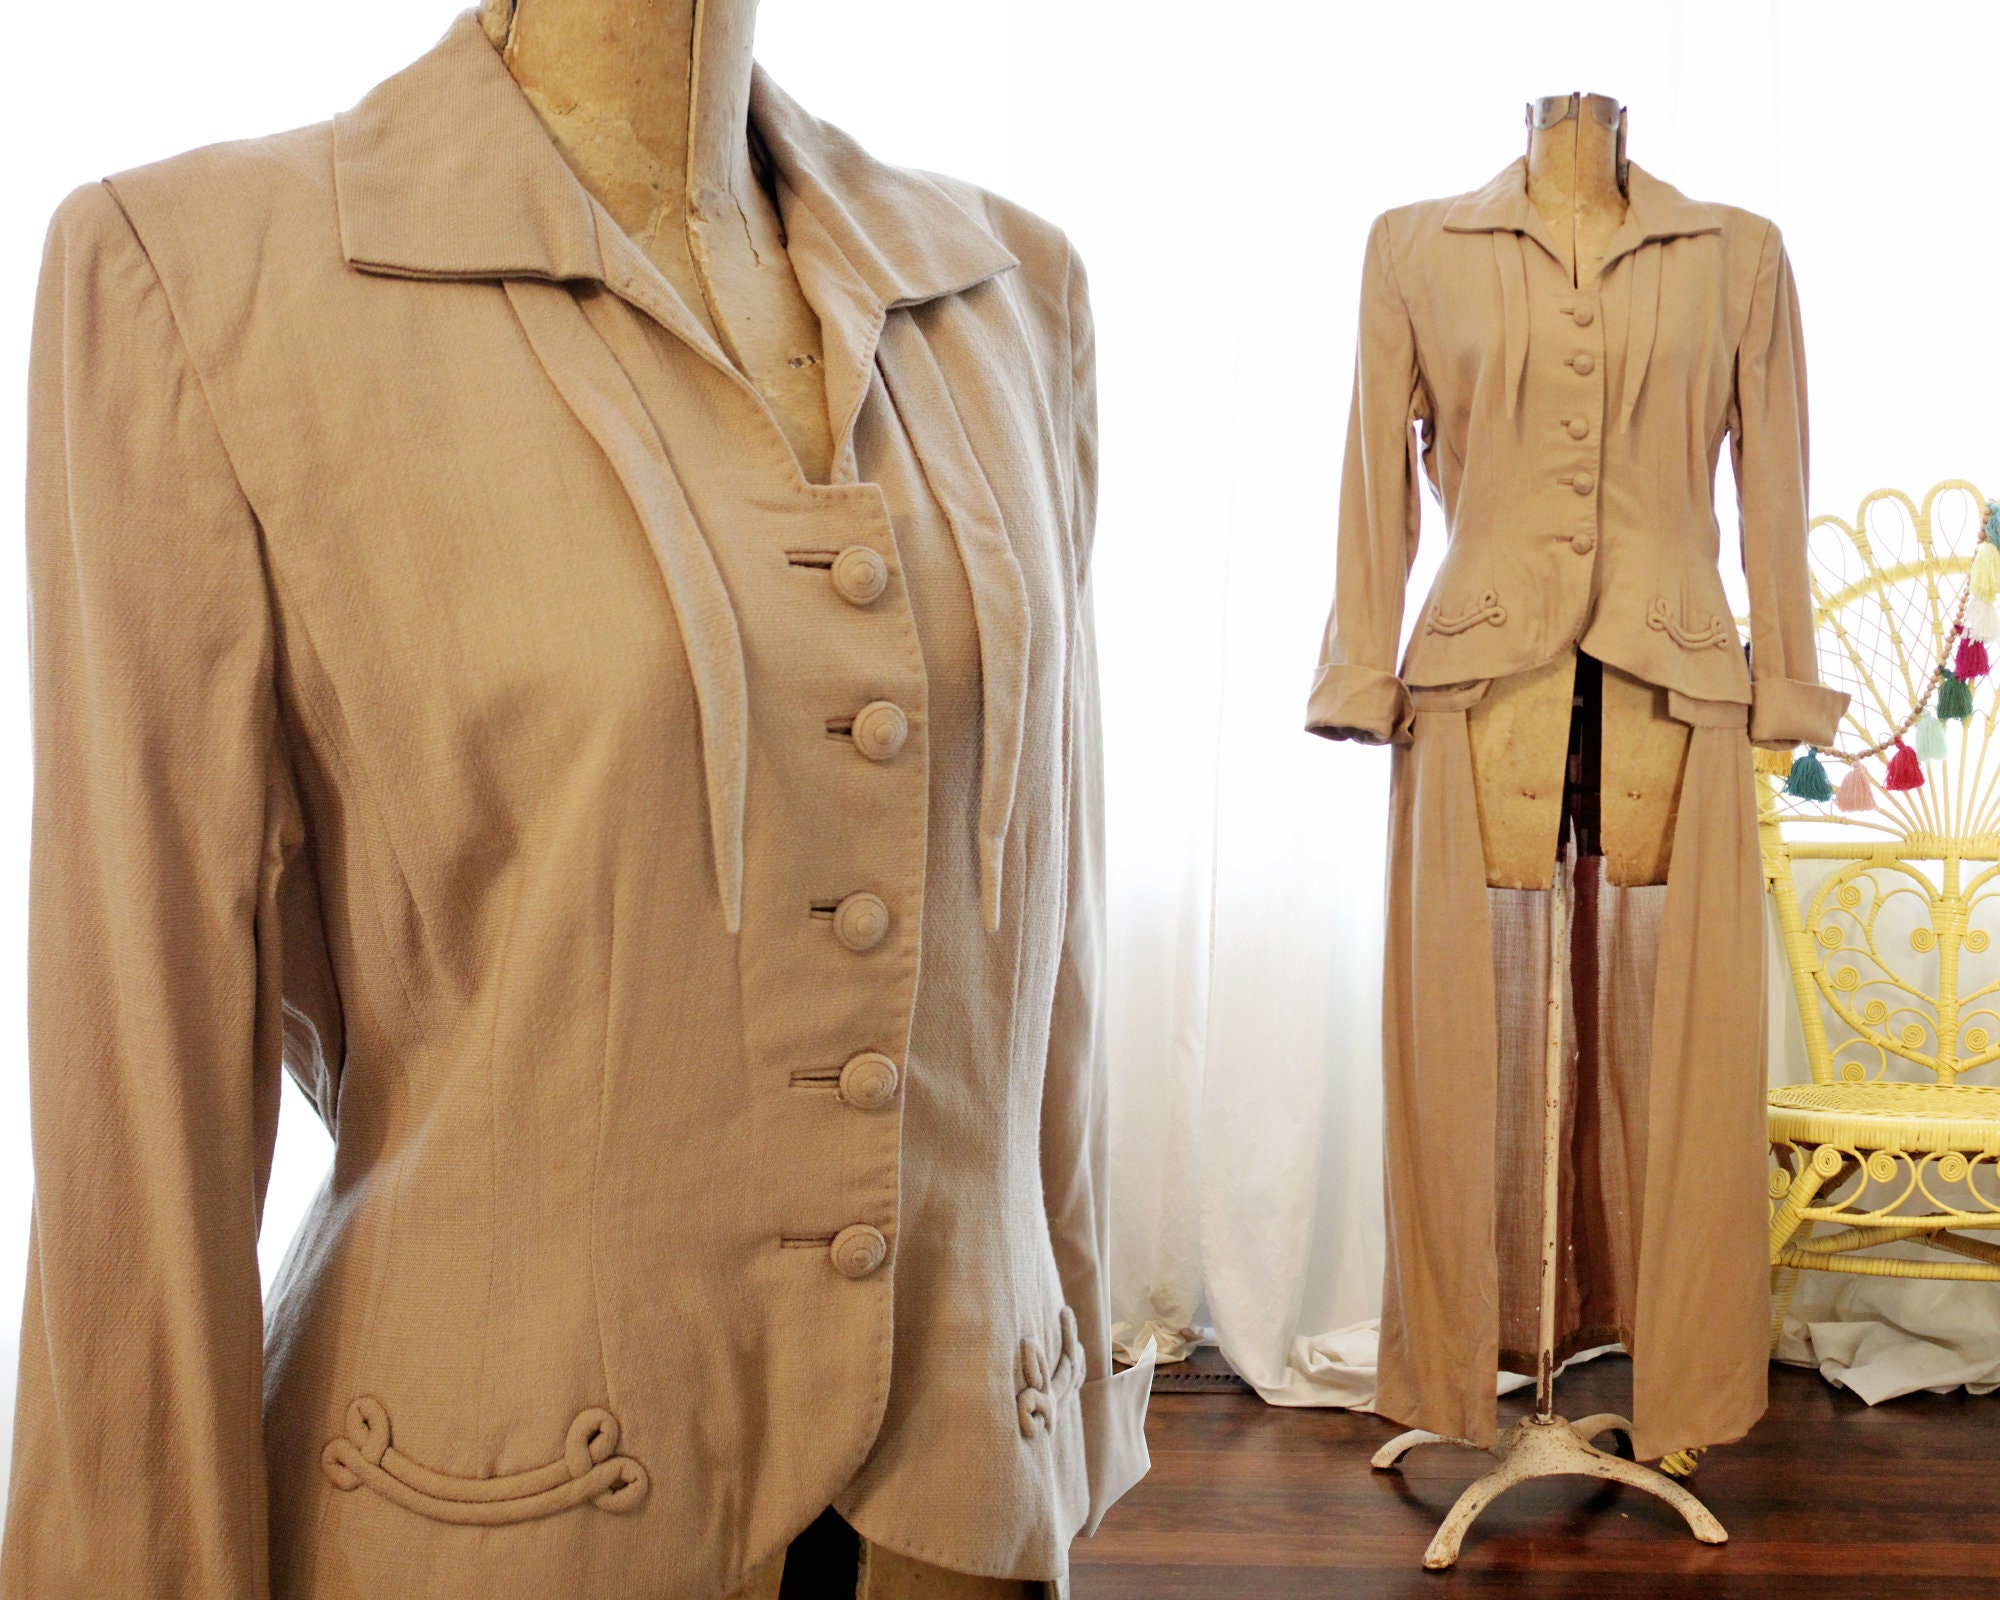 Real Vintage Search Engine Vintage 1940S 1930S Friedmont Wool Skirted Suit Jacket Maxi Coat Beige Tan Pocket Appliqué Notched Lapels $86.25 AT vintagedancer.com